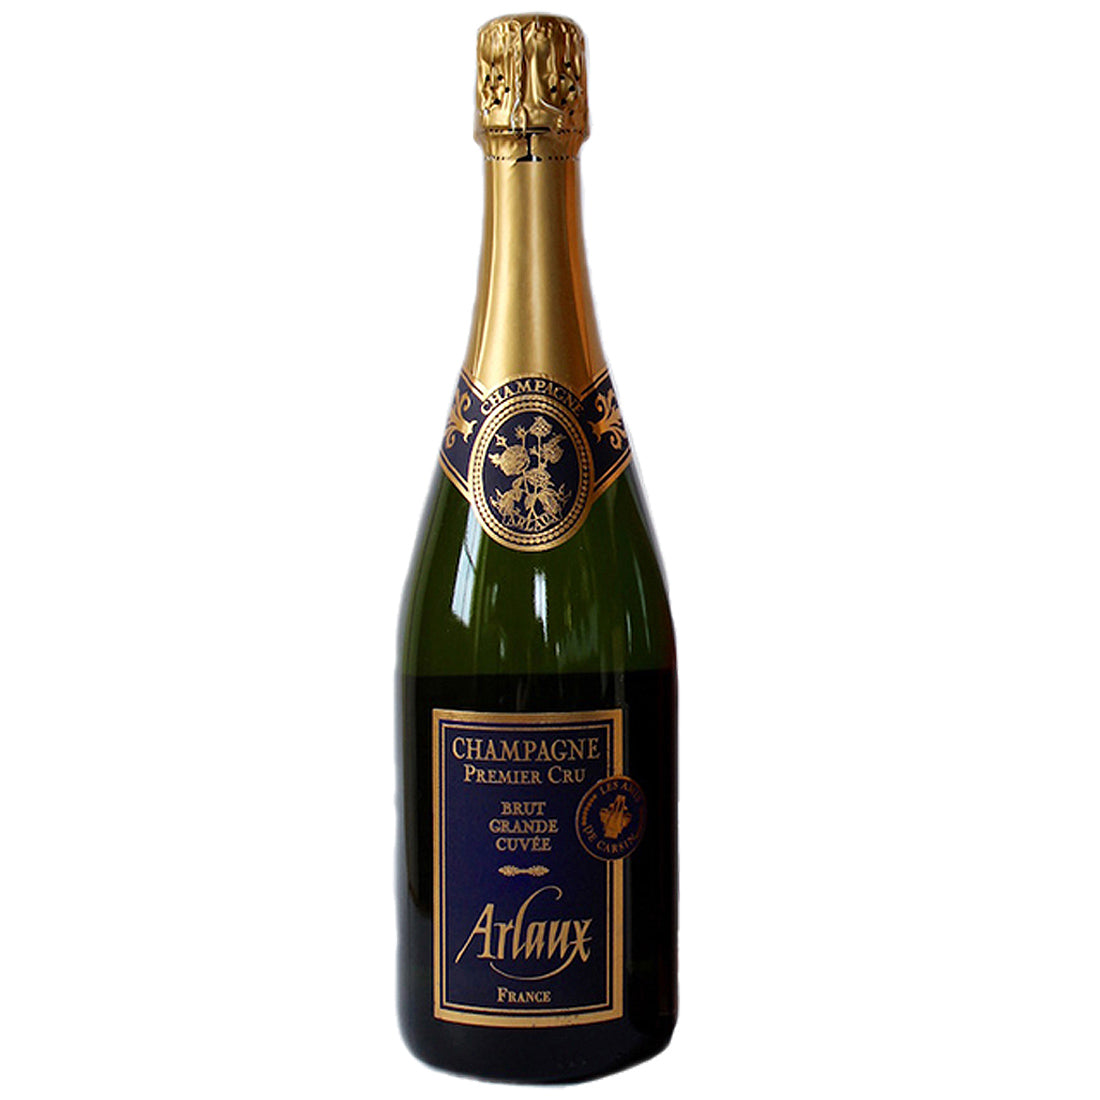 Arlaux Champagne Brut Grande Cuvée Premier Cru